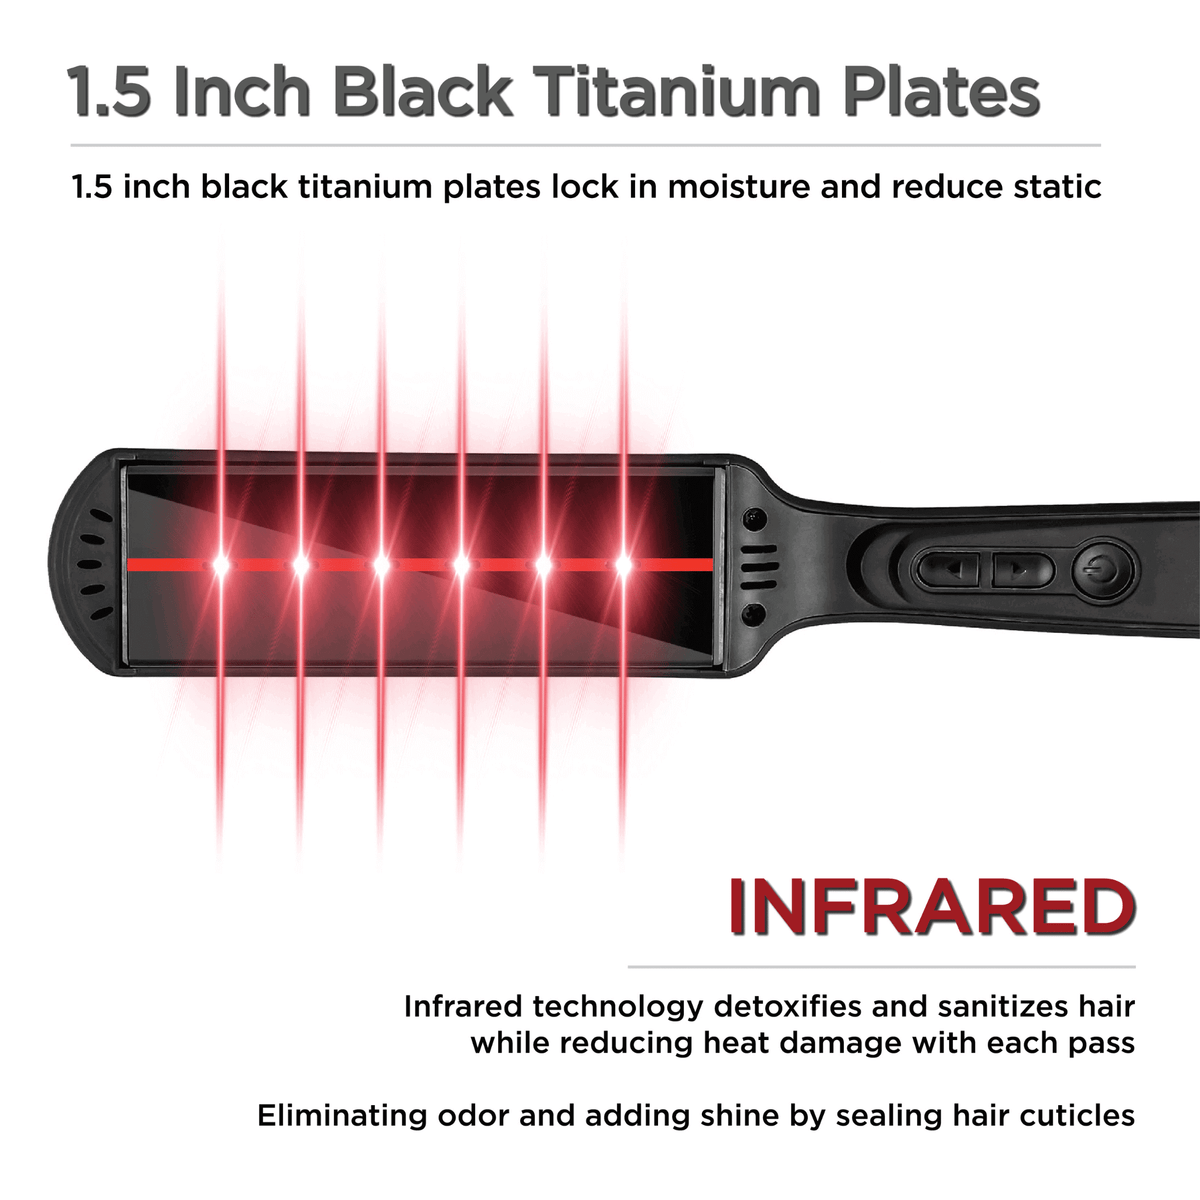 CROC Premium Infrared Black Titanium Flat Iron 1.5 Inch